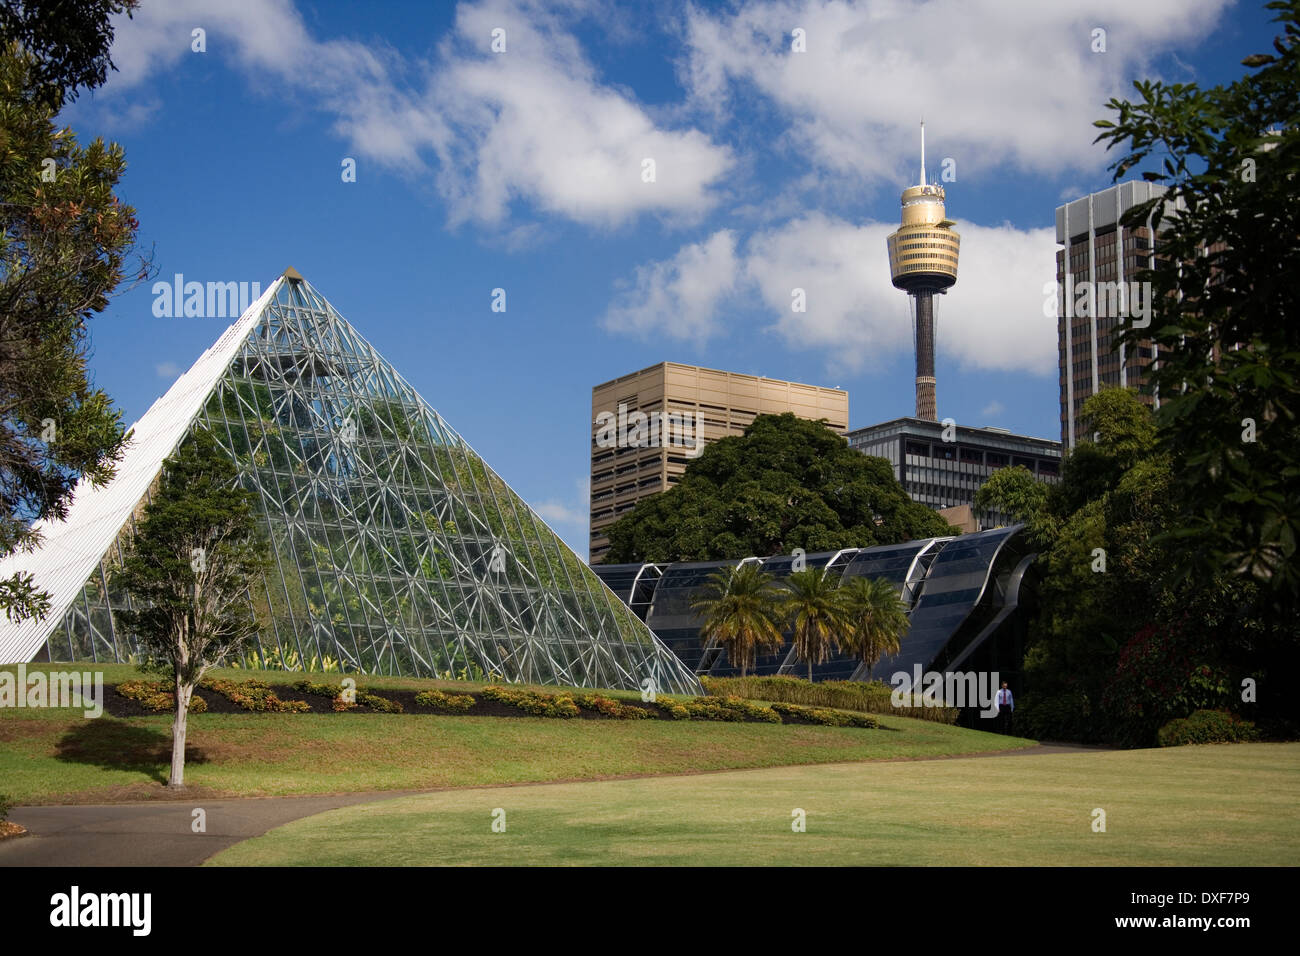 Die Pyramide-Gewächshaus im Botanischen Garten in Sydney in Australien. Stockfoto